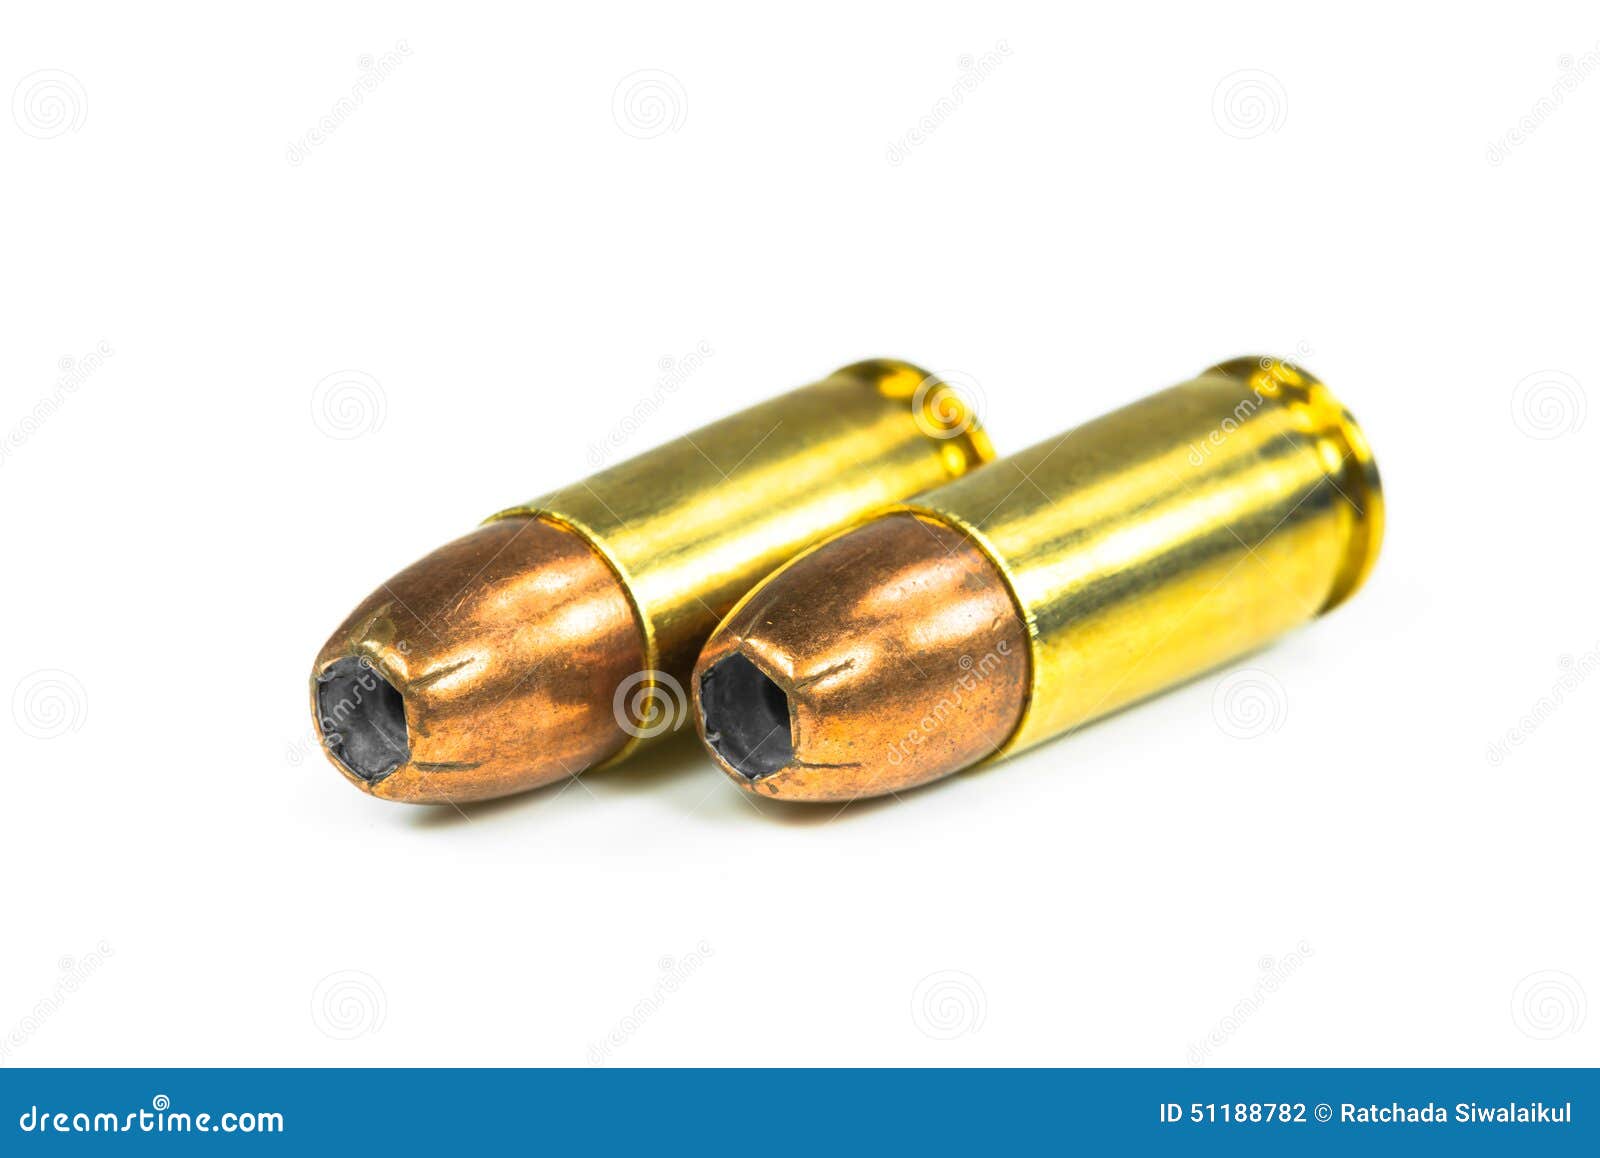 Bullets foto de archivo. Imagen de crimen, asalto, plomo - 51188782